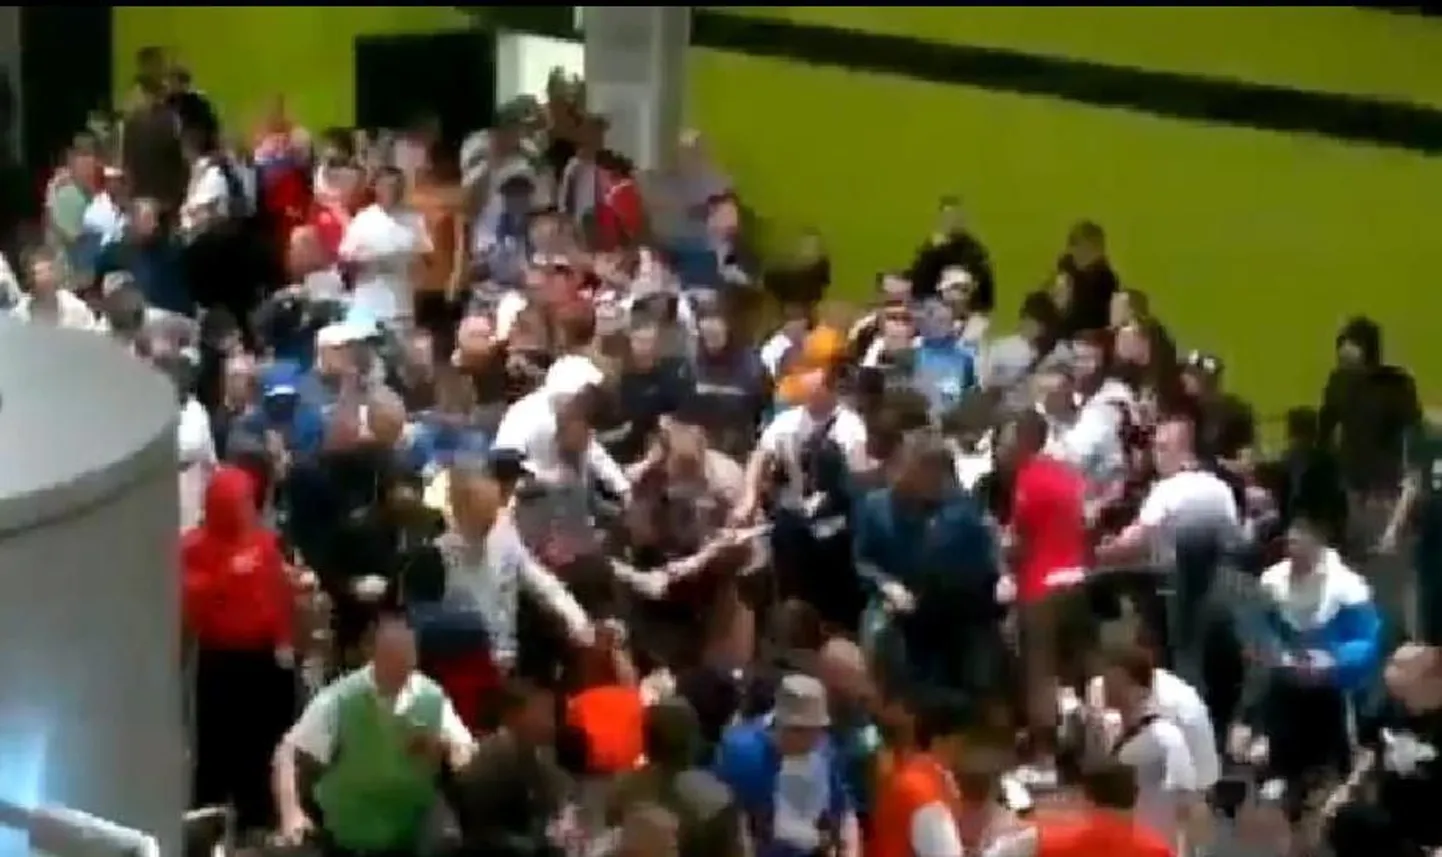 Fännid Wroclawi staadionil turvatöötajaid peksmas.